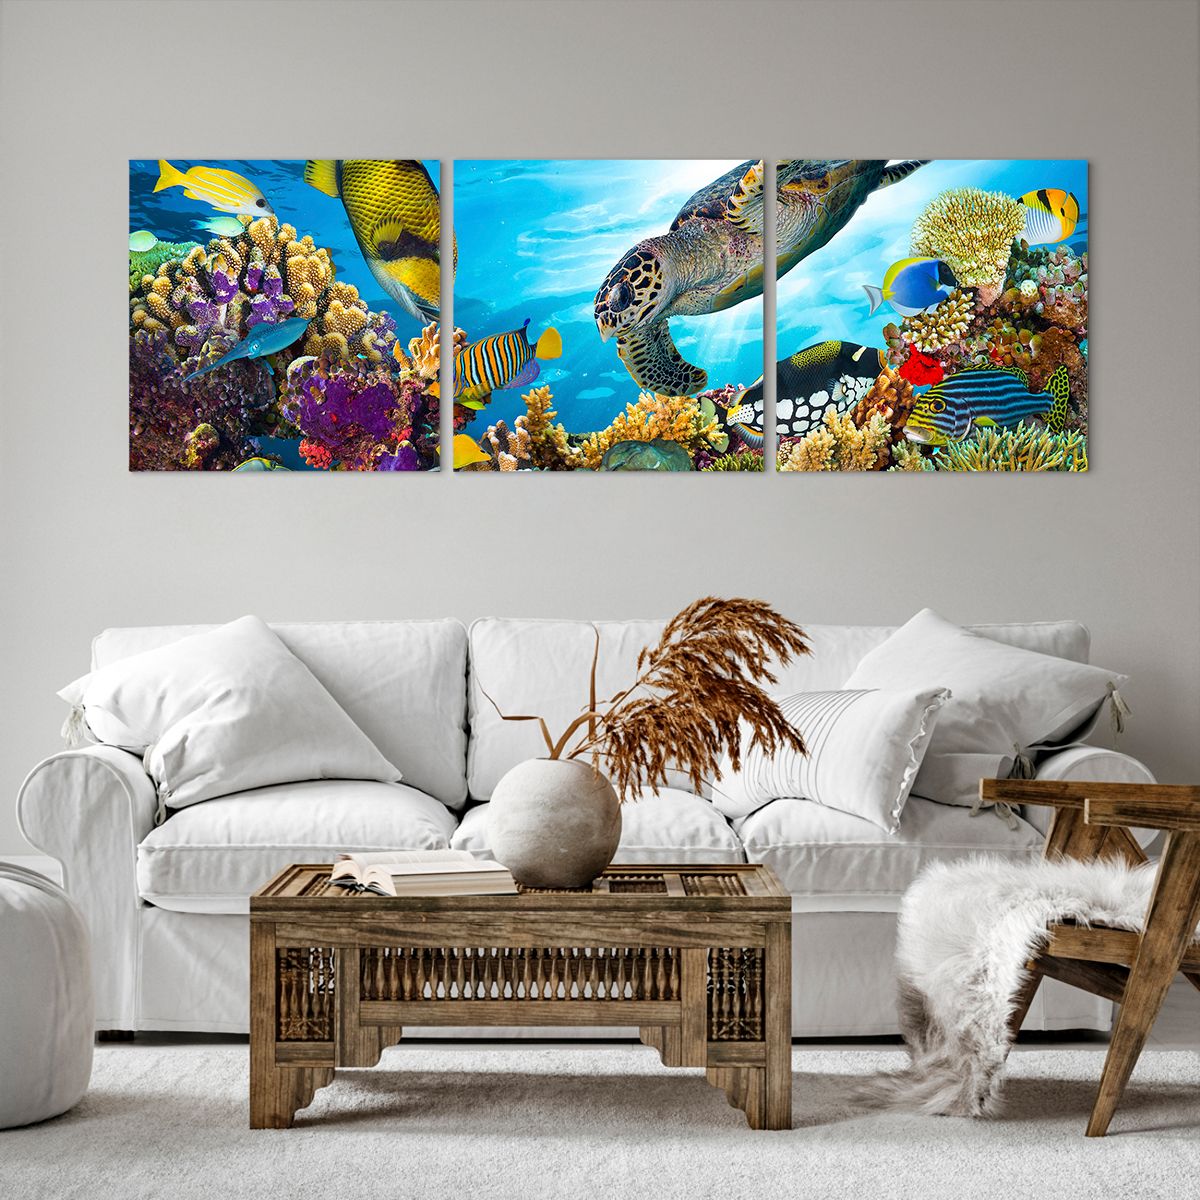 Obrazy na płótnie Rafa Koralowa, Obrazy na płótnie Morze, Obrazy na płótnie Podwodny Świat, Obrazy na płótnie Żółw, Obrazy na płótnie Ryby